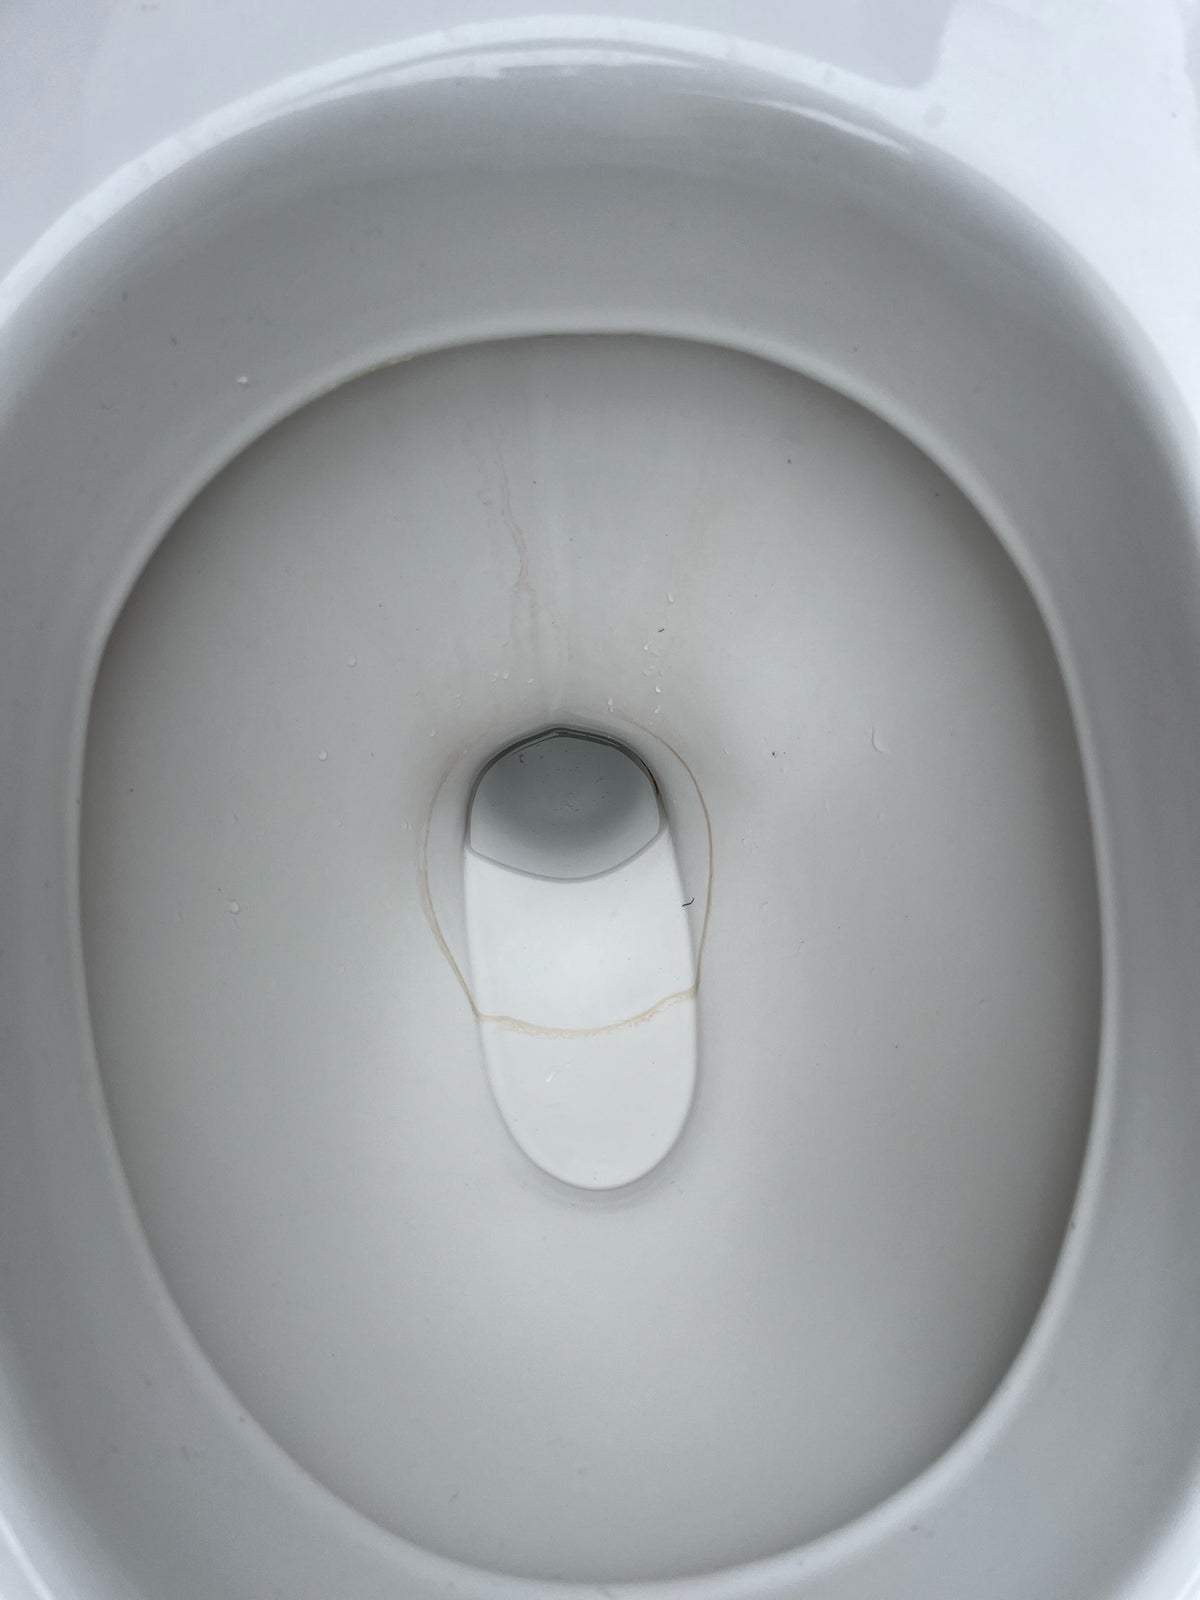 Toilet, Gustavberg